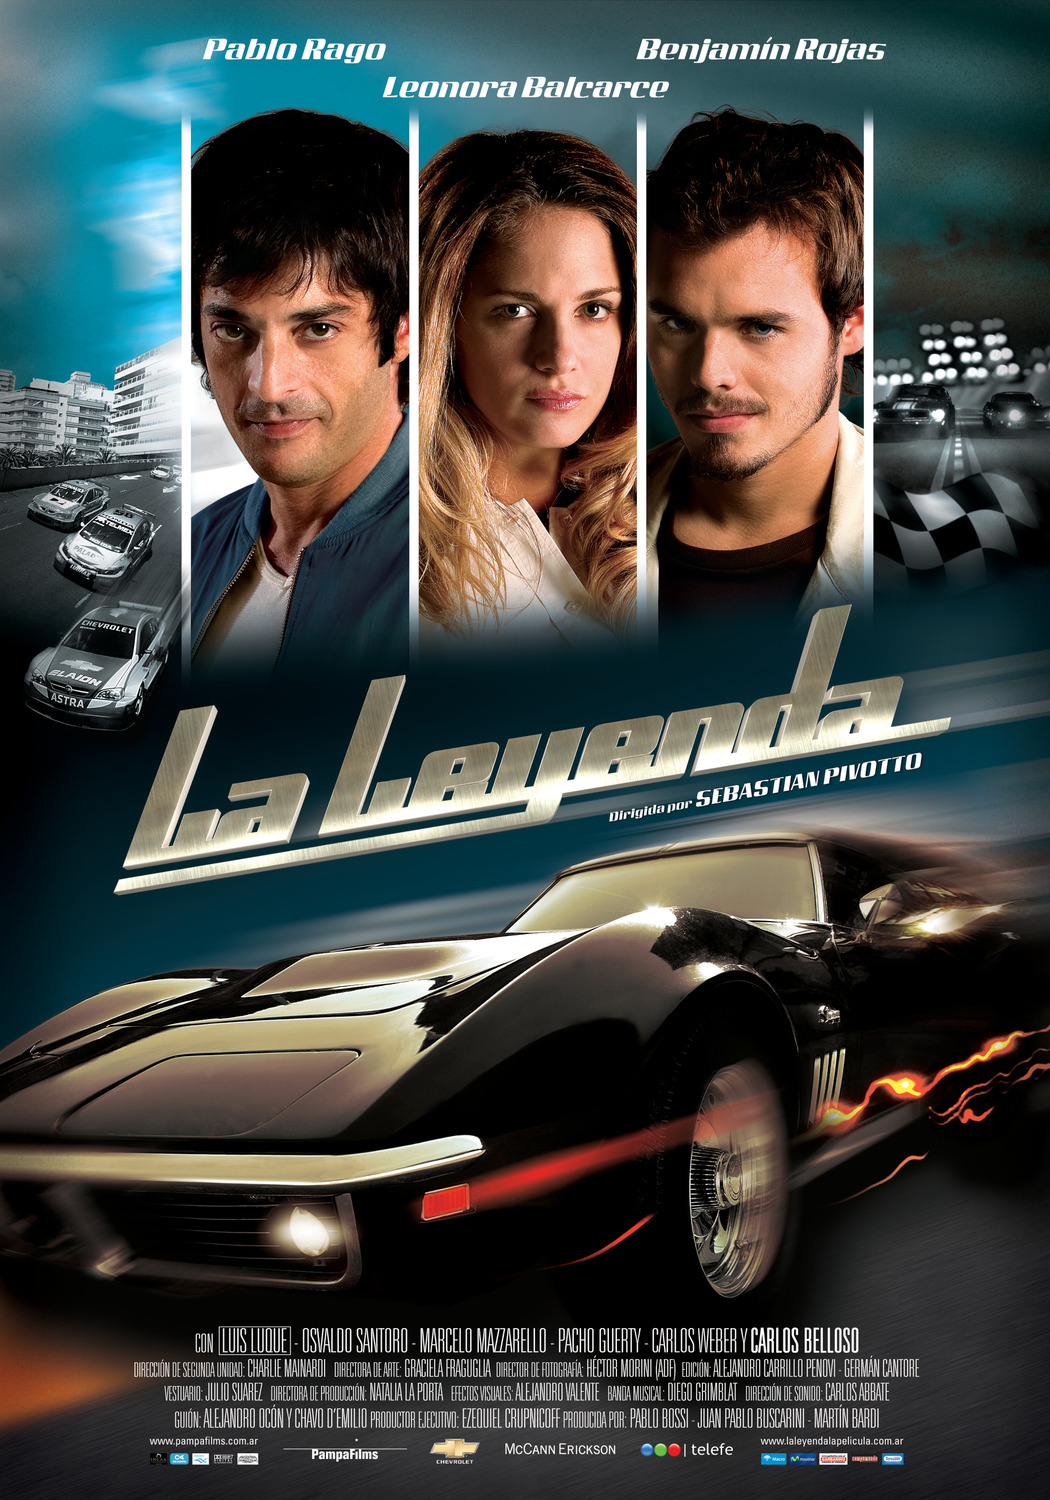 Extra Large Movie Poster Image for La leyenda 